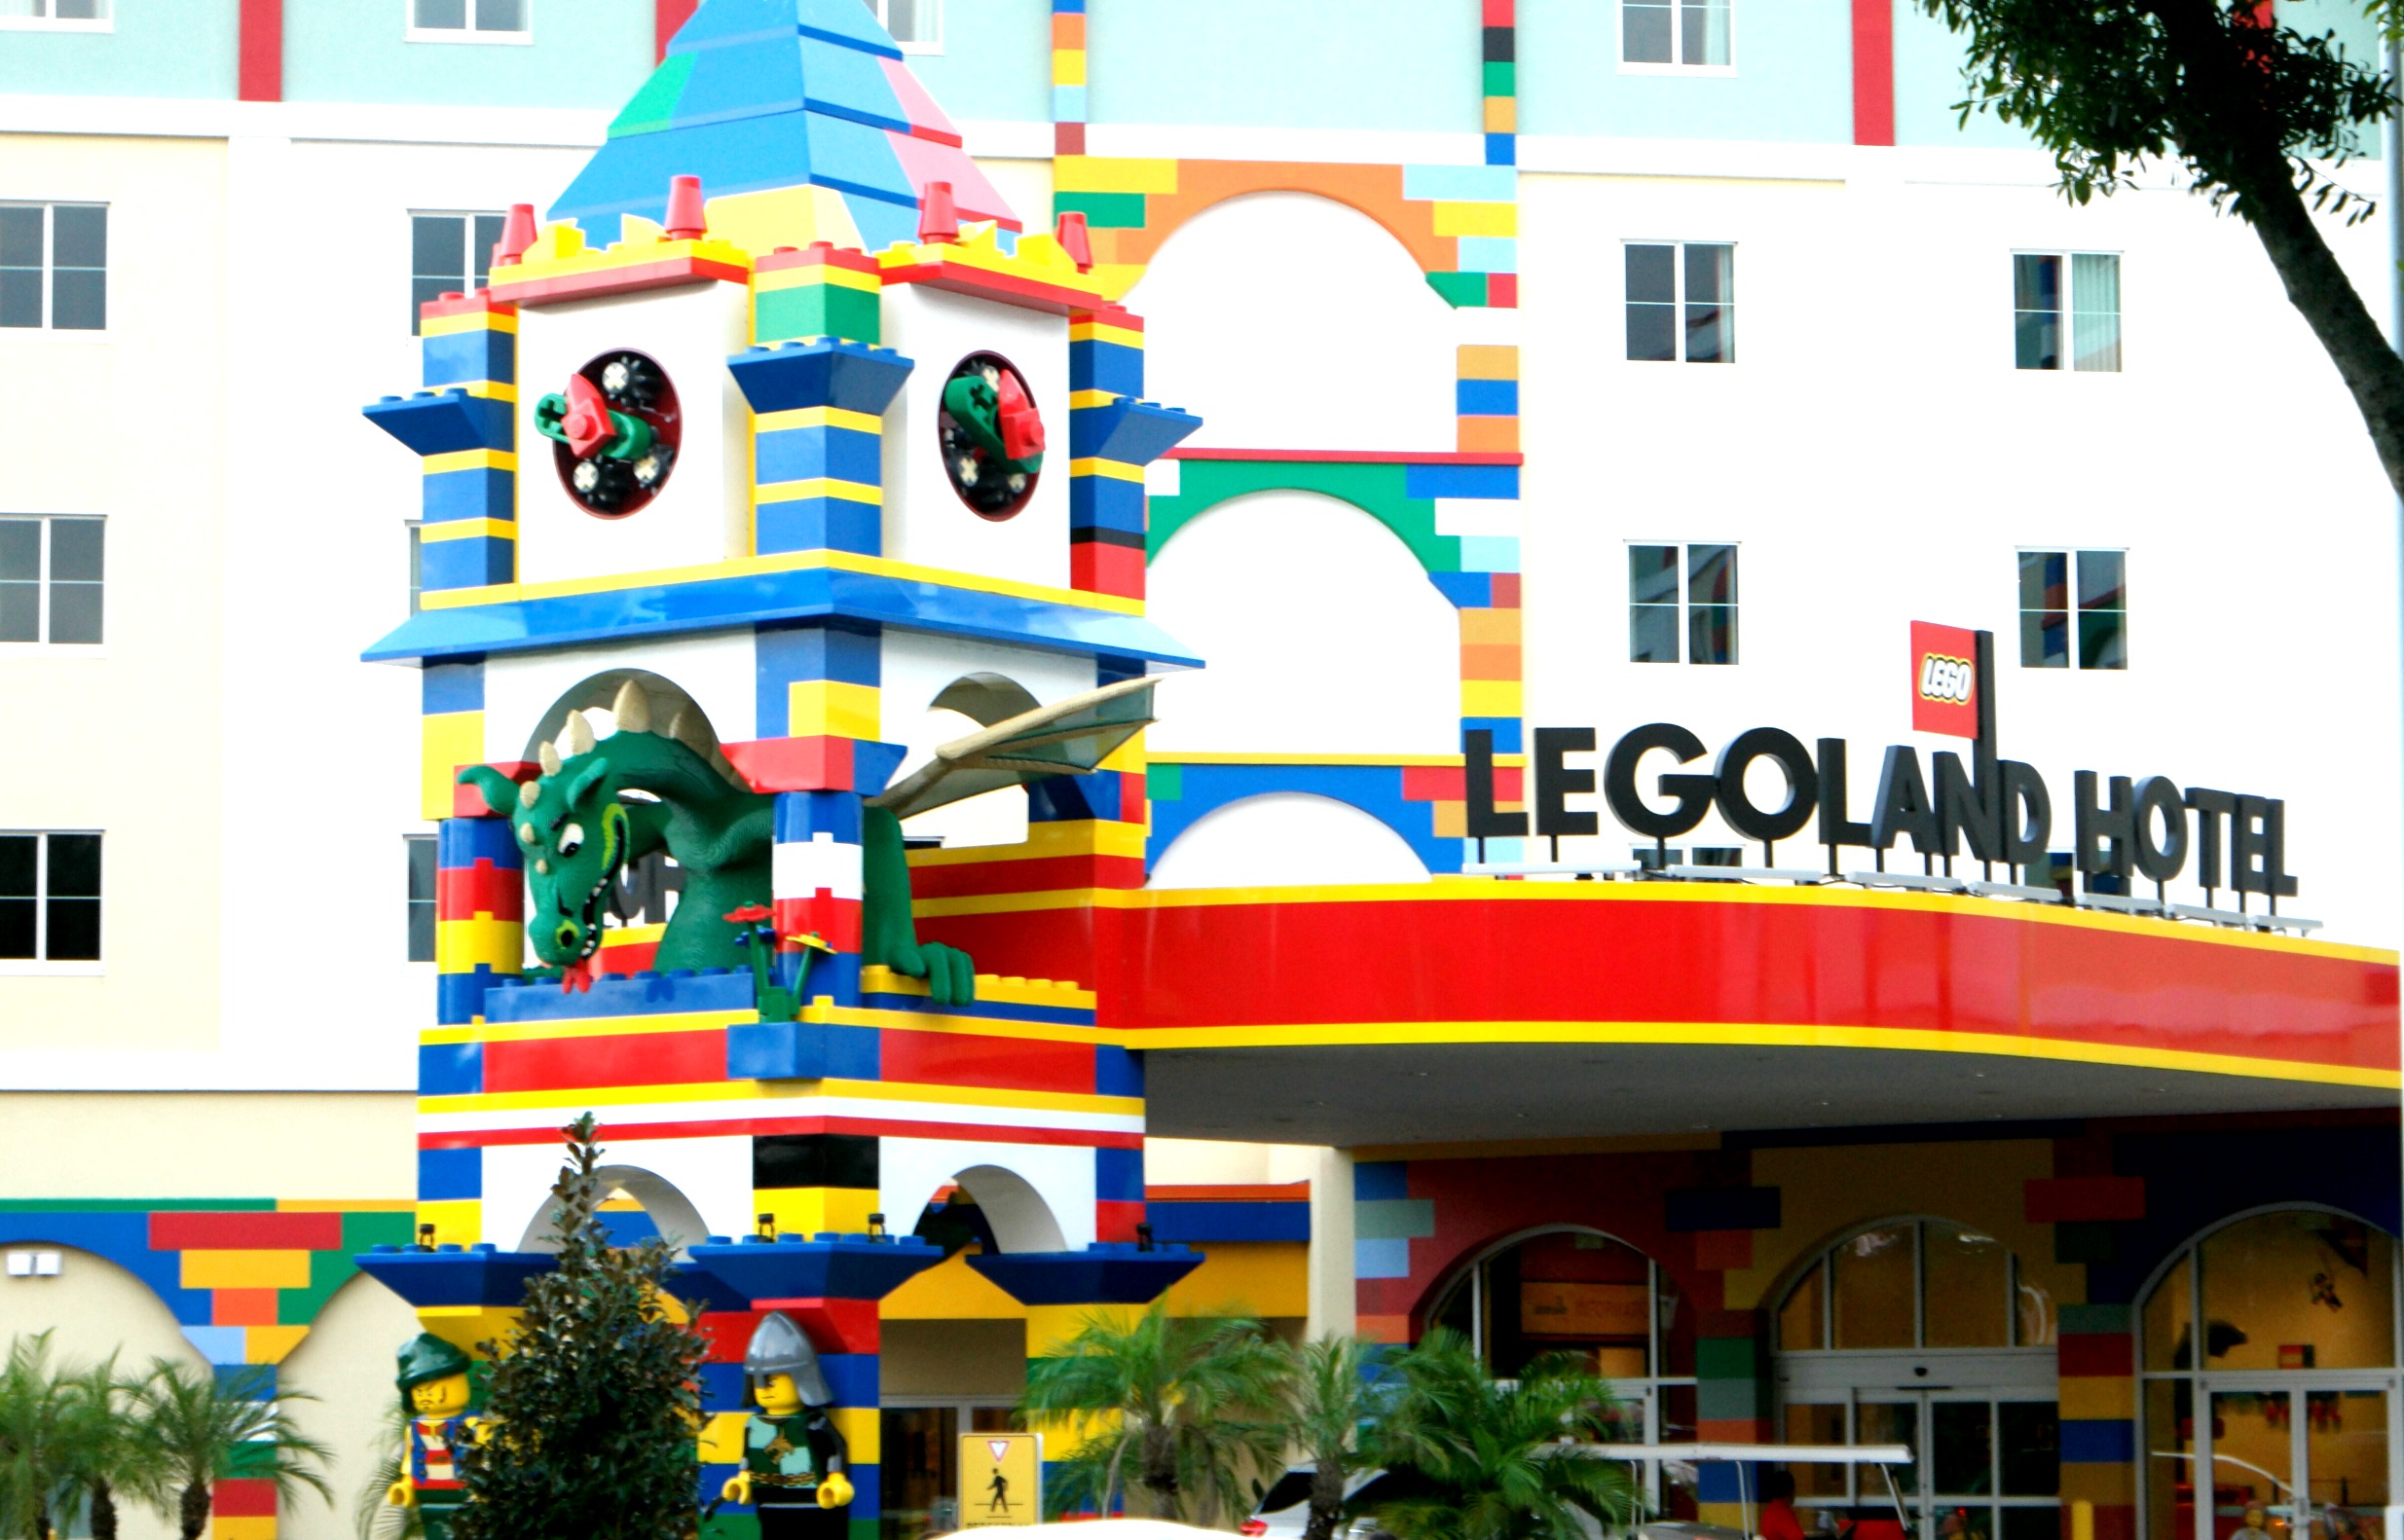 Lego-land-orlando-hotel-tips-to-visit